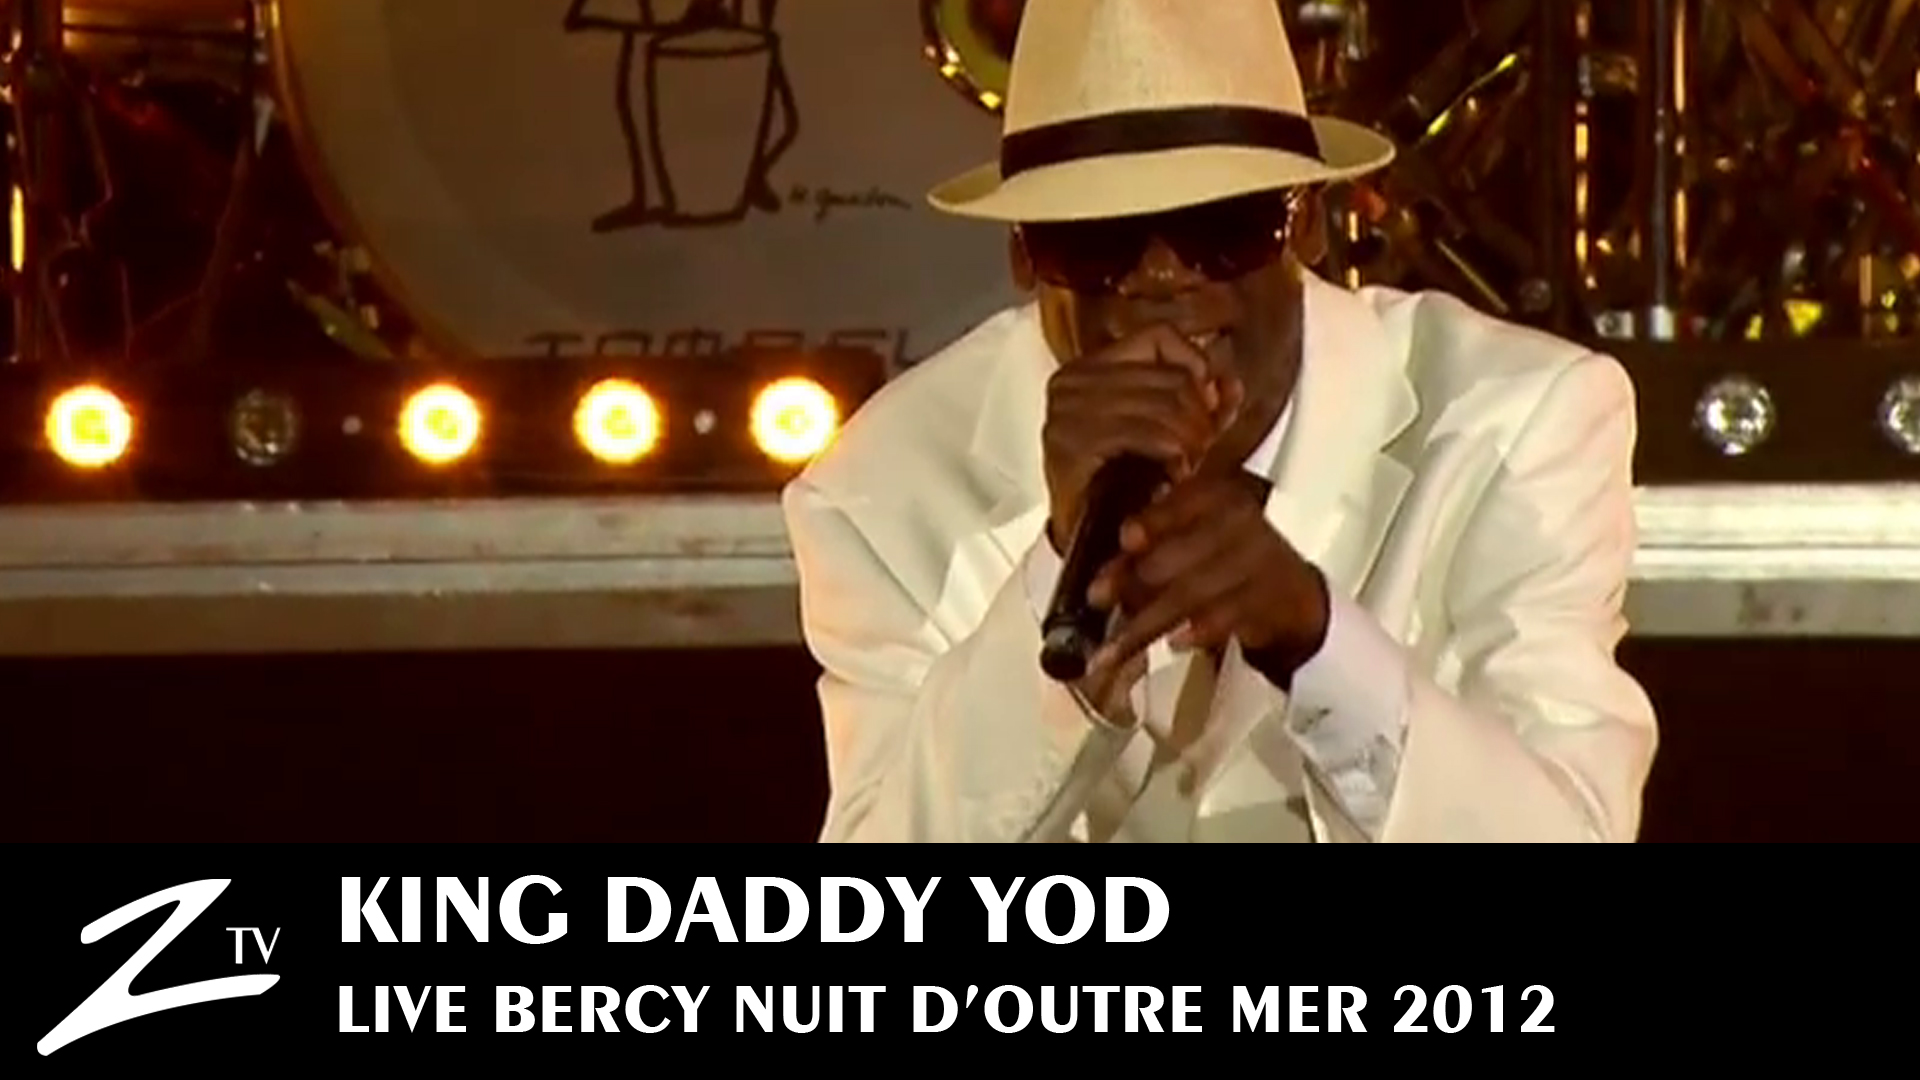 King Daddy Yod